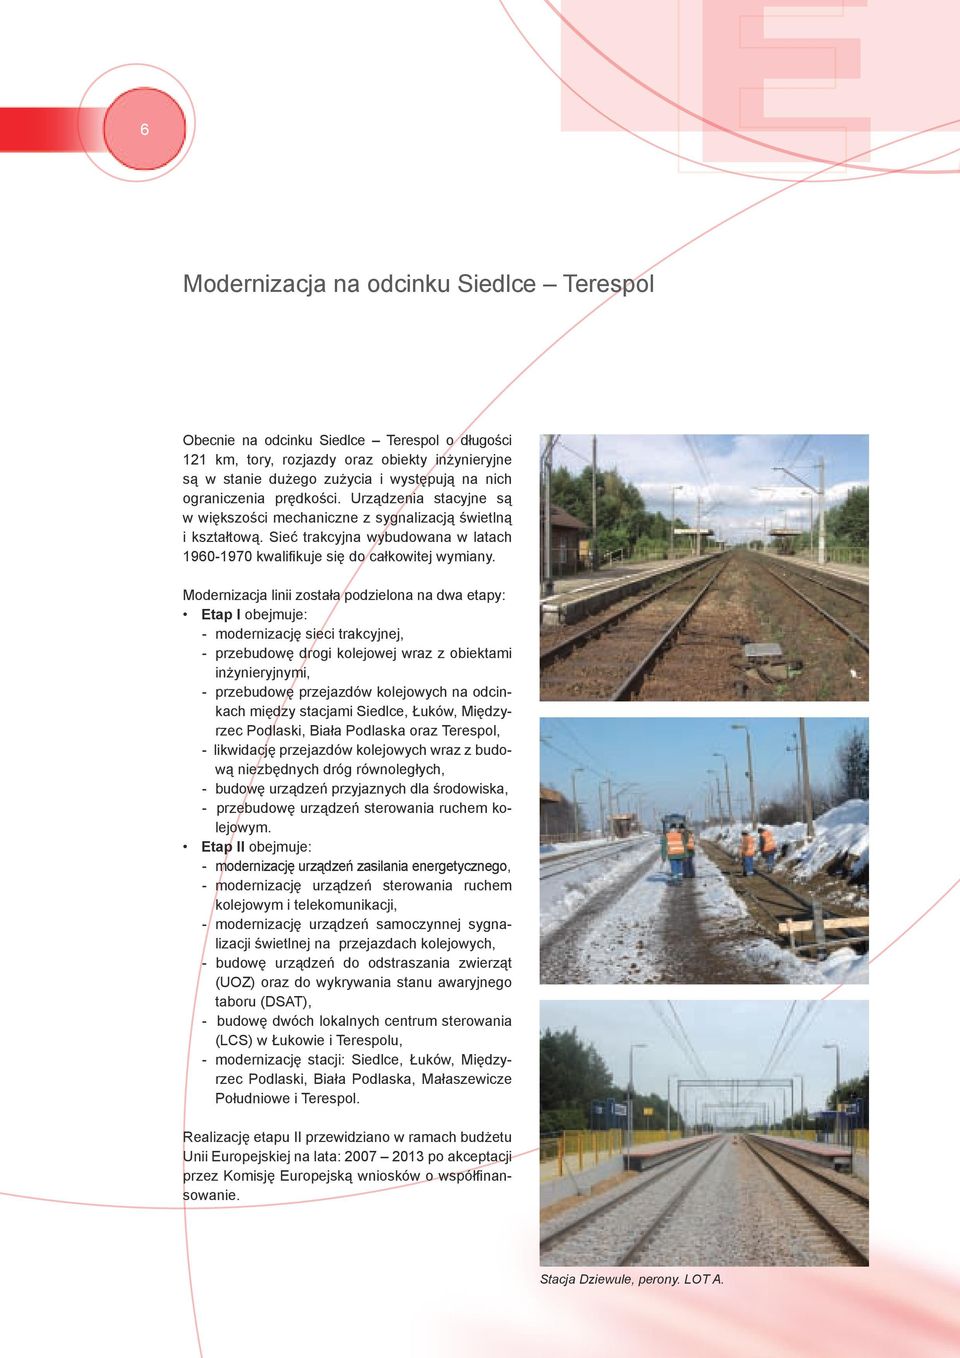 Modernizacja linii została podzielona na dwa etapy: Etap I obejmuje: - modernizację sieci trakcyjnej, - przebudowę drogi kolejowej wraz z obiektami inżynieryjnymi, - przebudowę przejazdów kolejowych